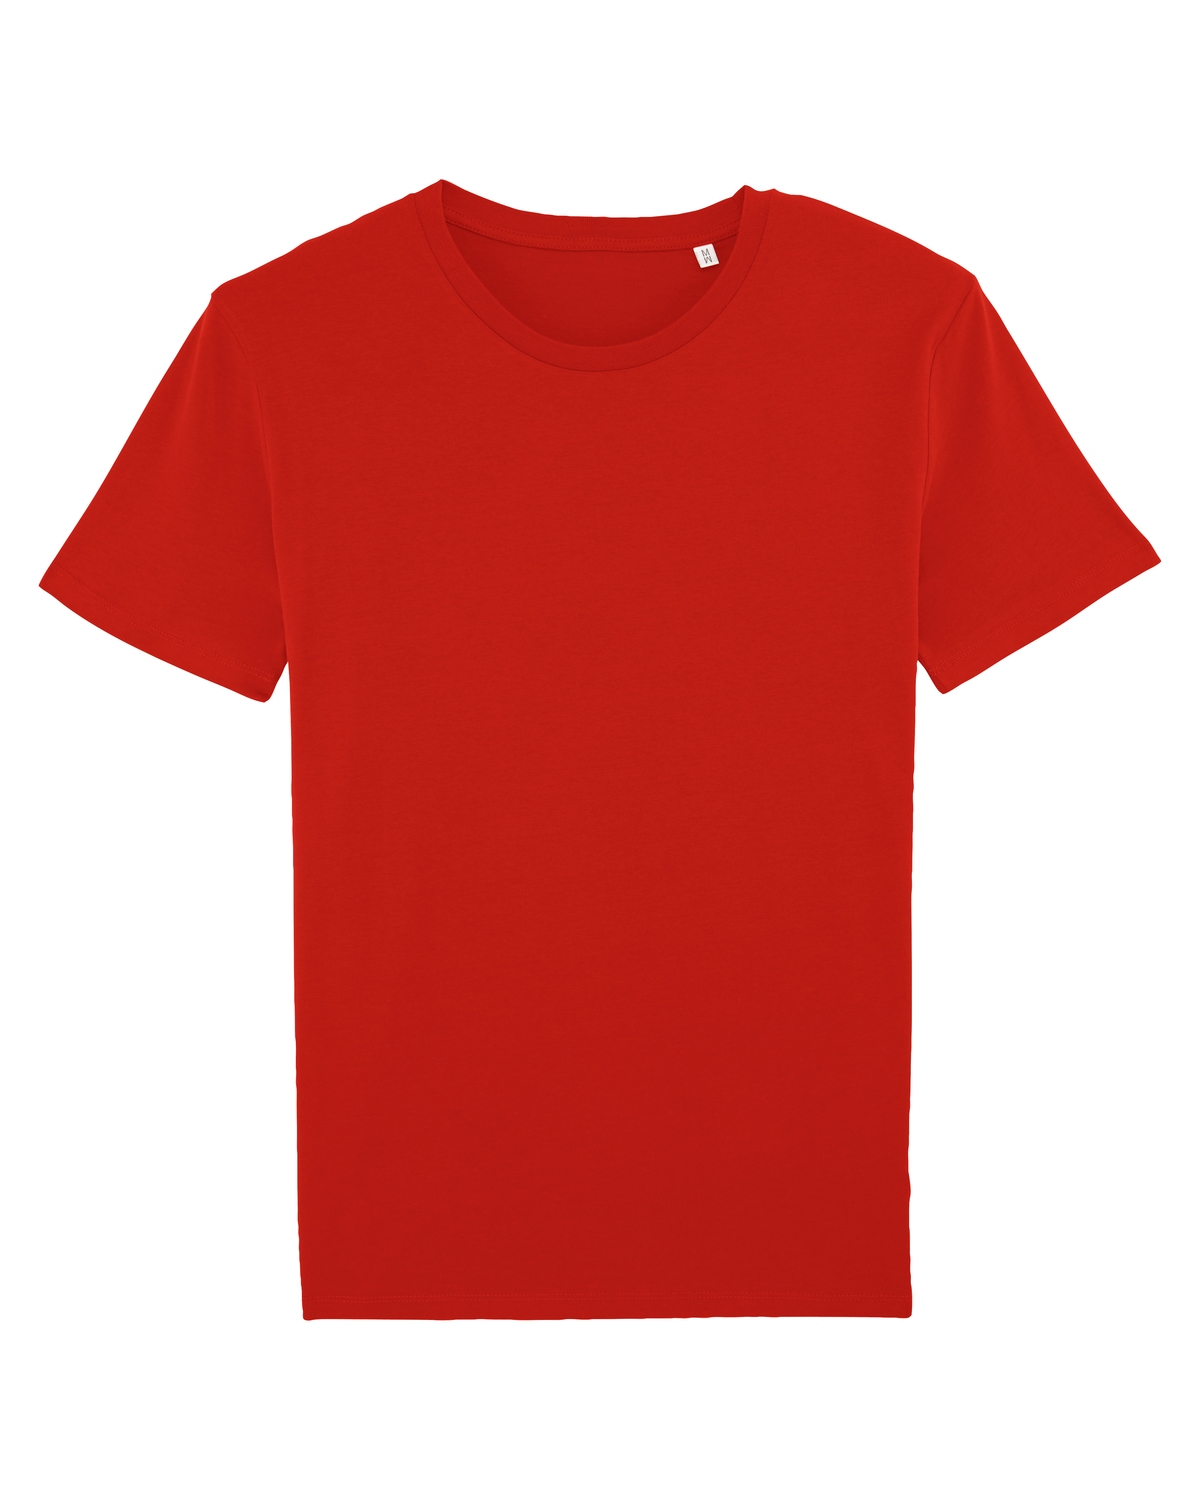 Stanley Leads T-Shirt FairWear Red 3XL